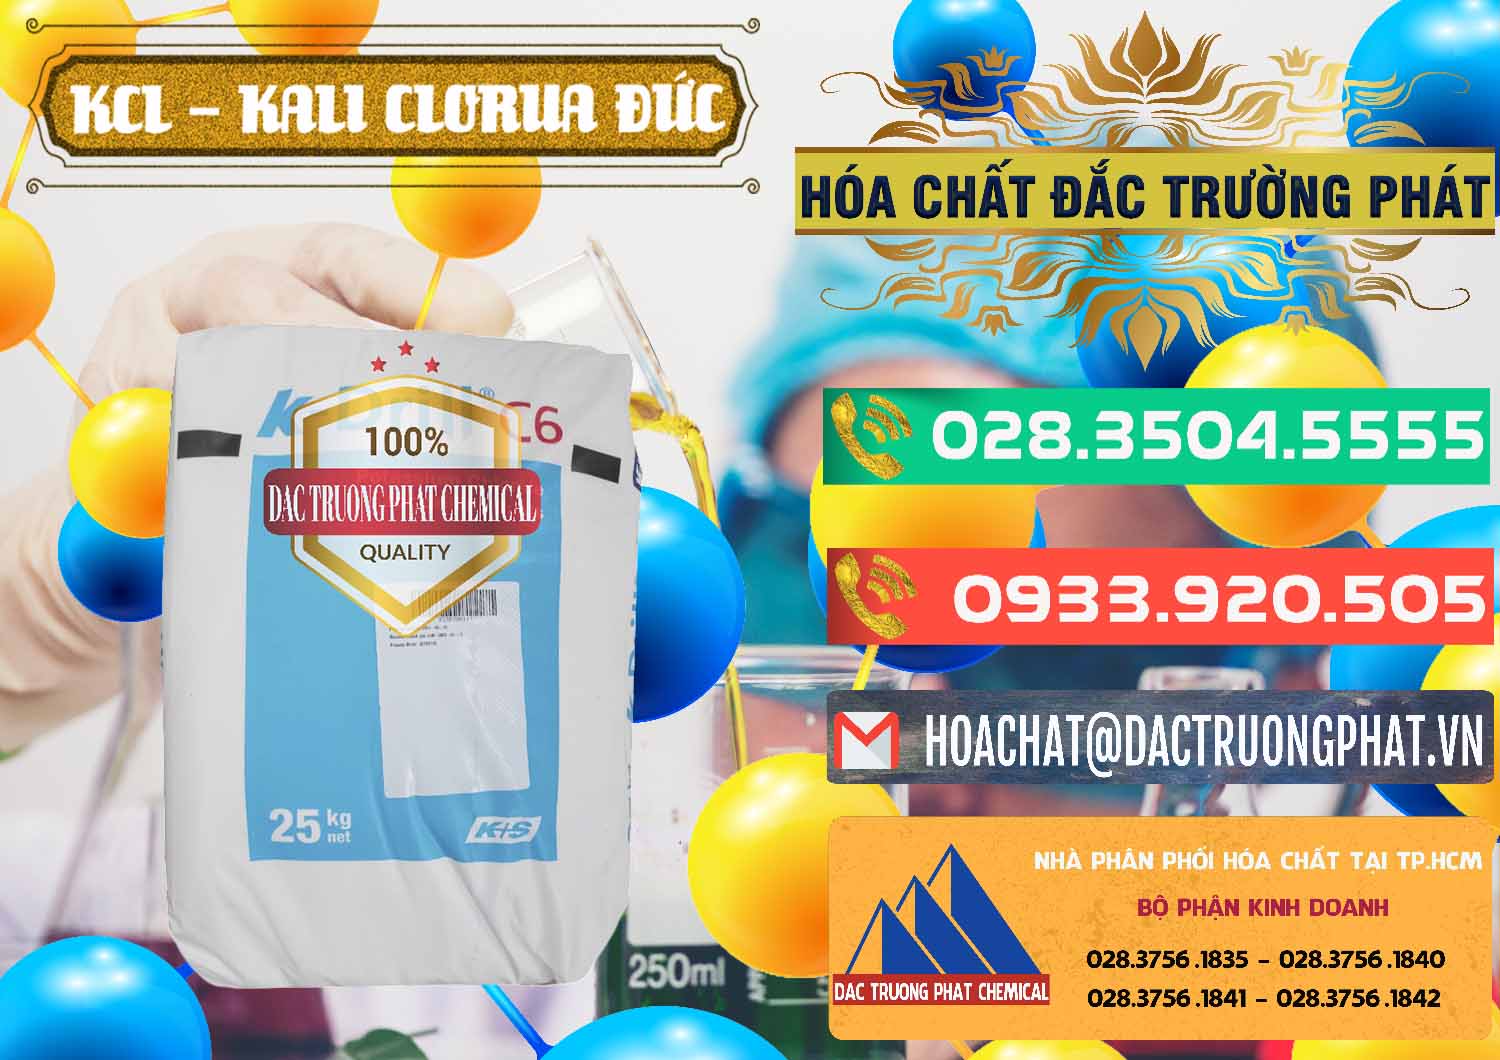 Đơn vị chuyên cung ứng - bán KCL – Kali Clorua Trắng K DRILL Đức Germany - 0428 - Nơi phân phối _ cung ứng hóa chất tại TP.HCM - congtyhoachat.com.vn